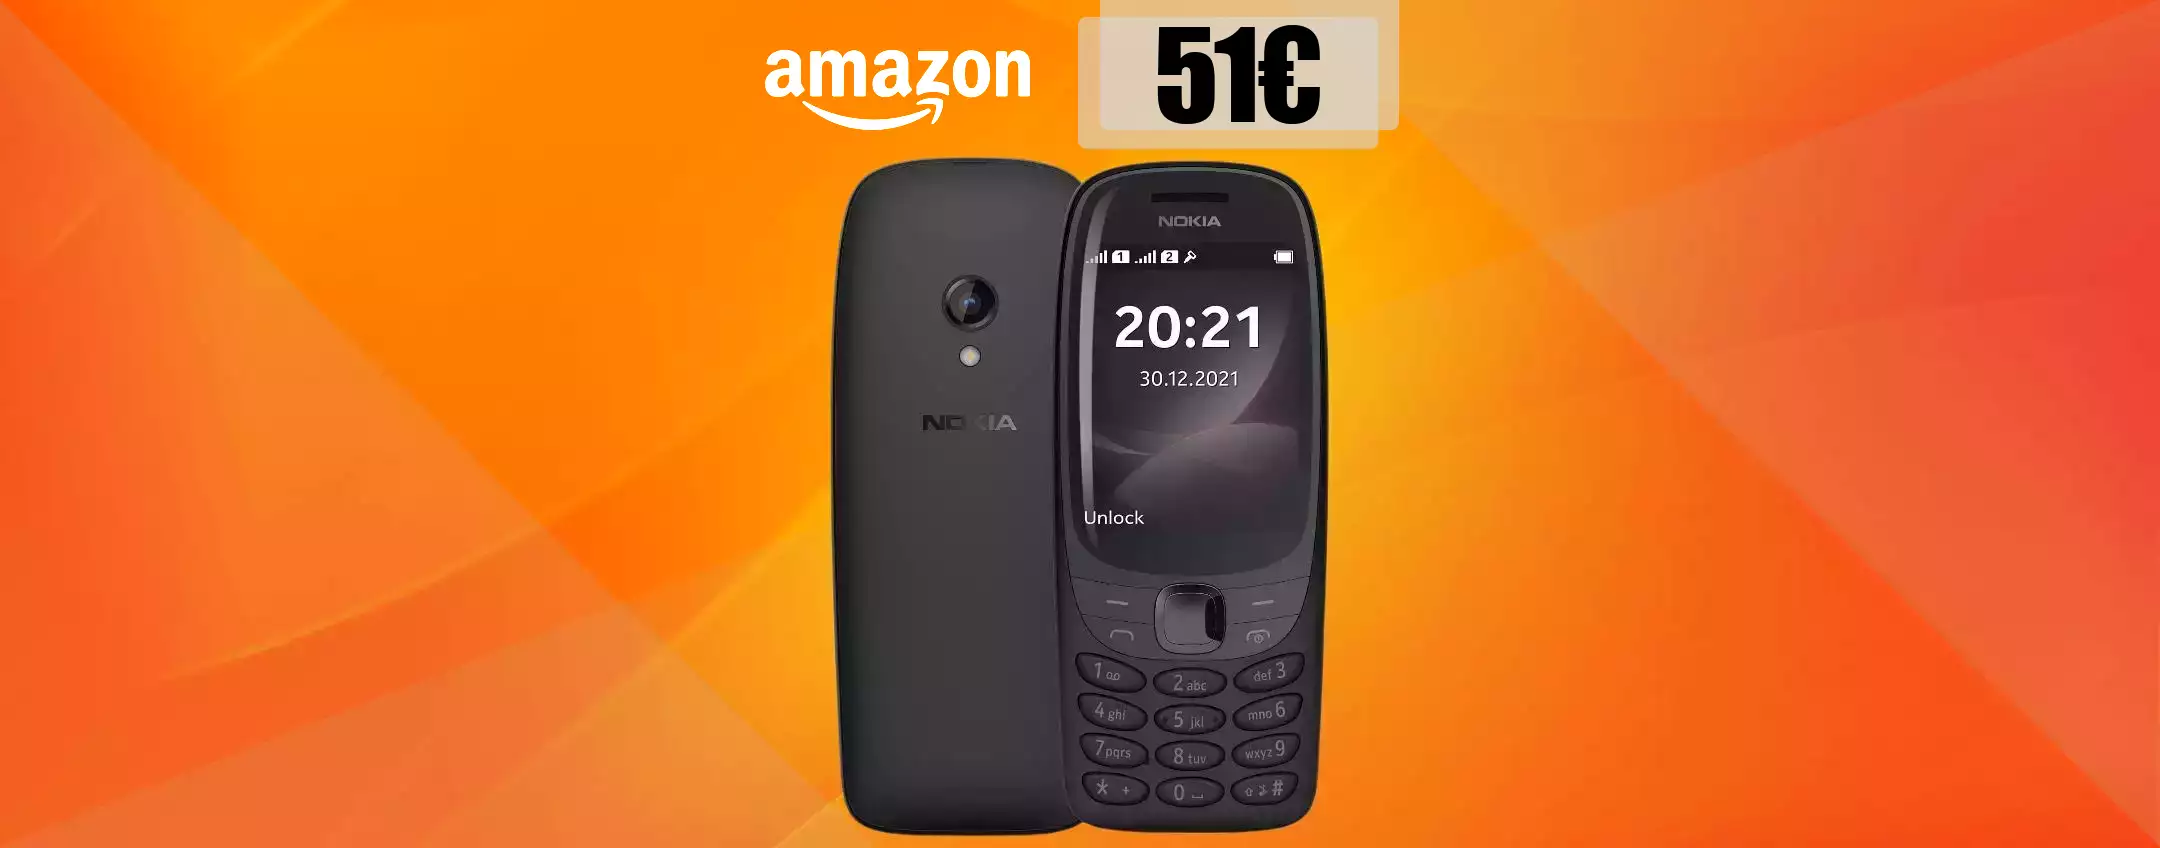 Nokia 6310, il cellulare più desiderato è tuo con appena 51 euro